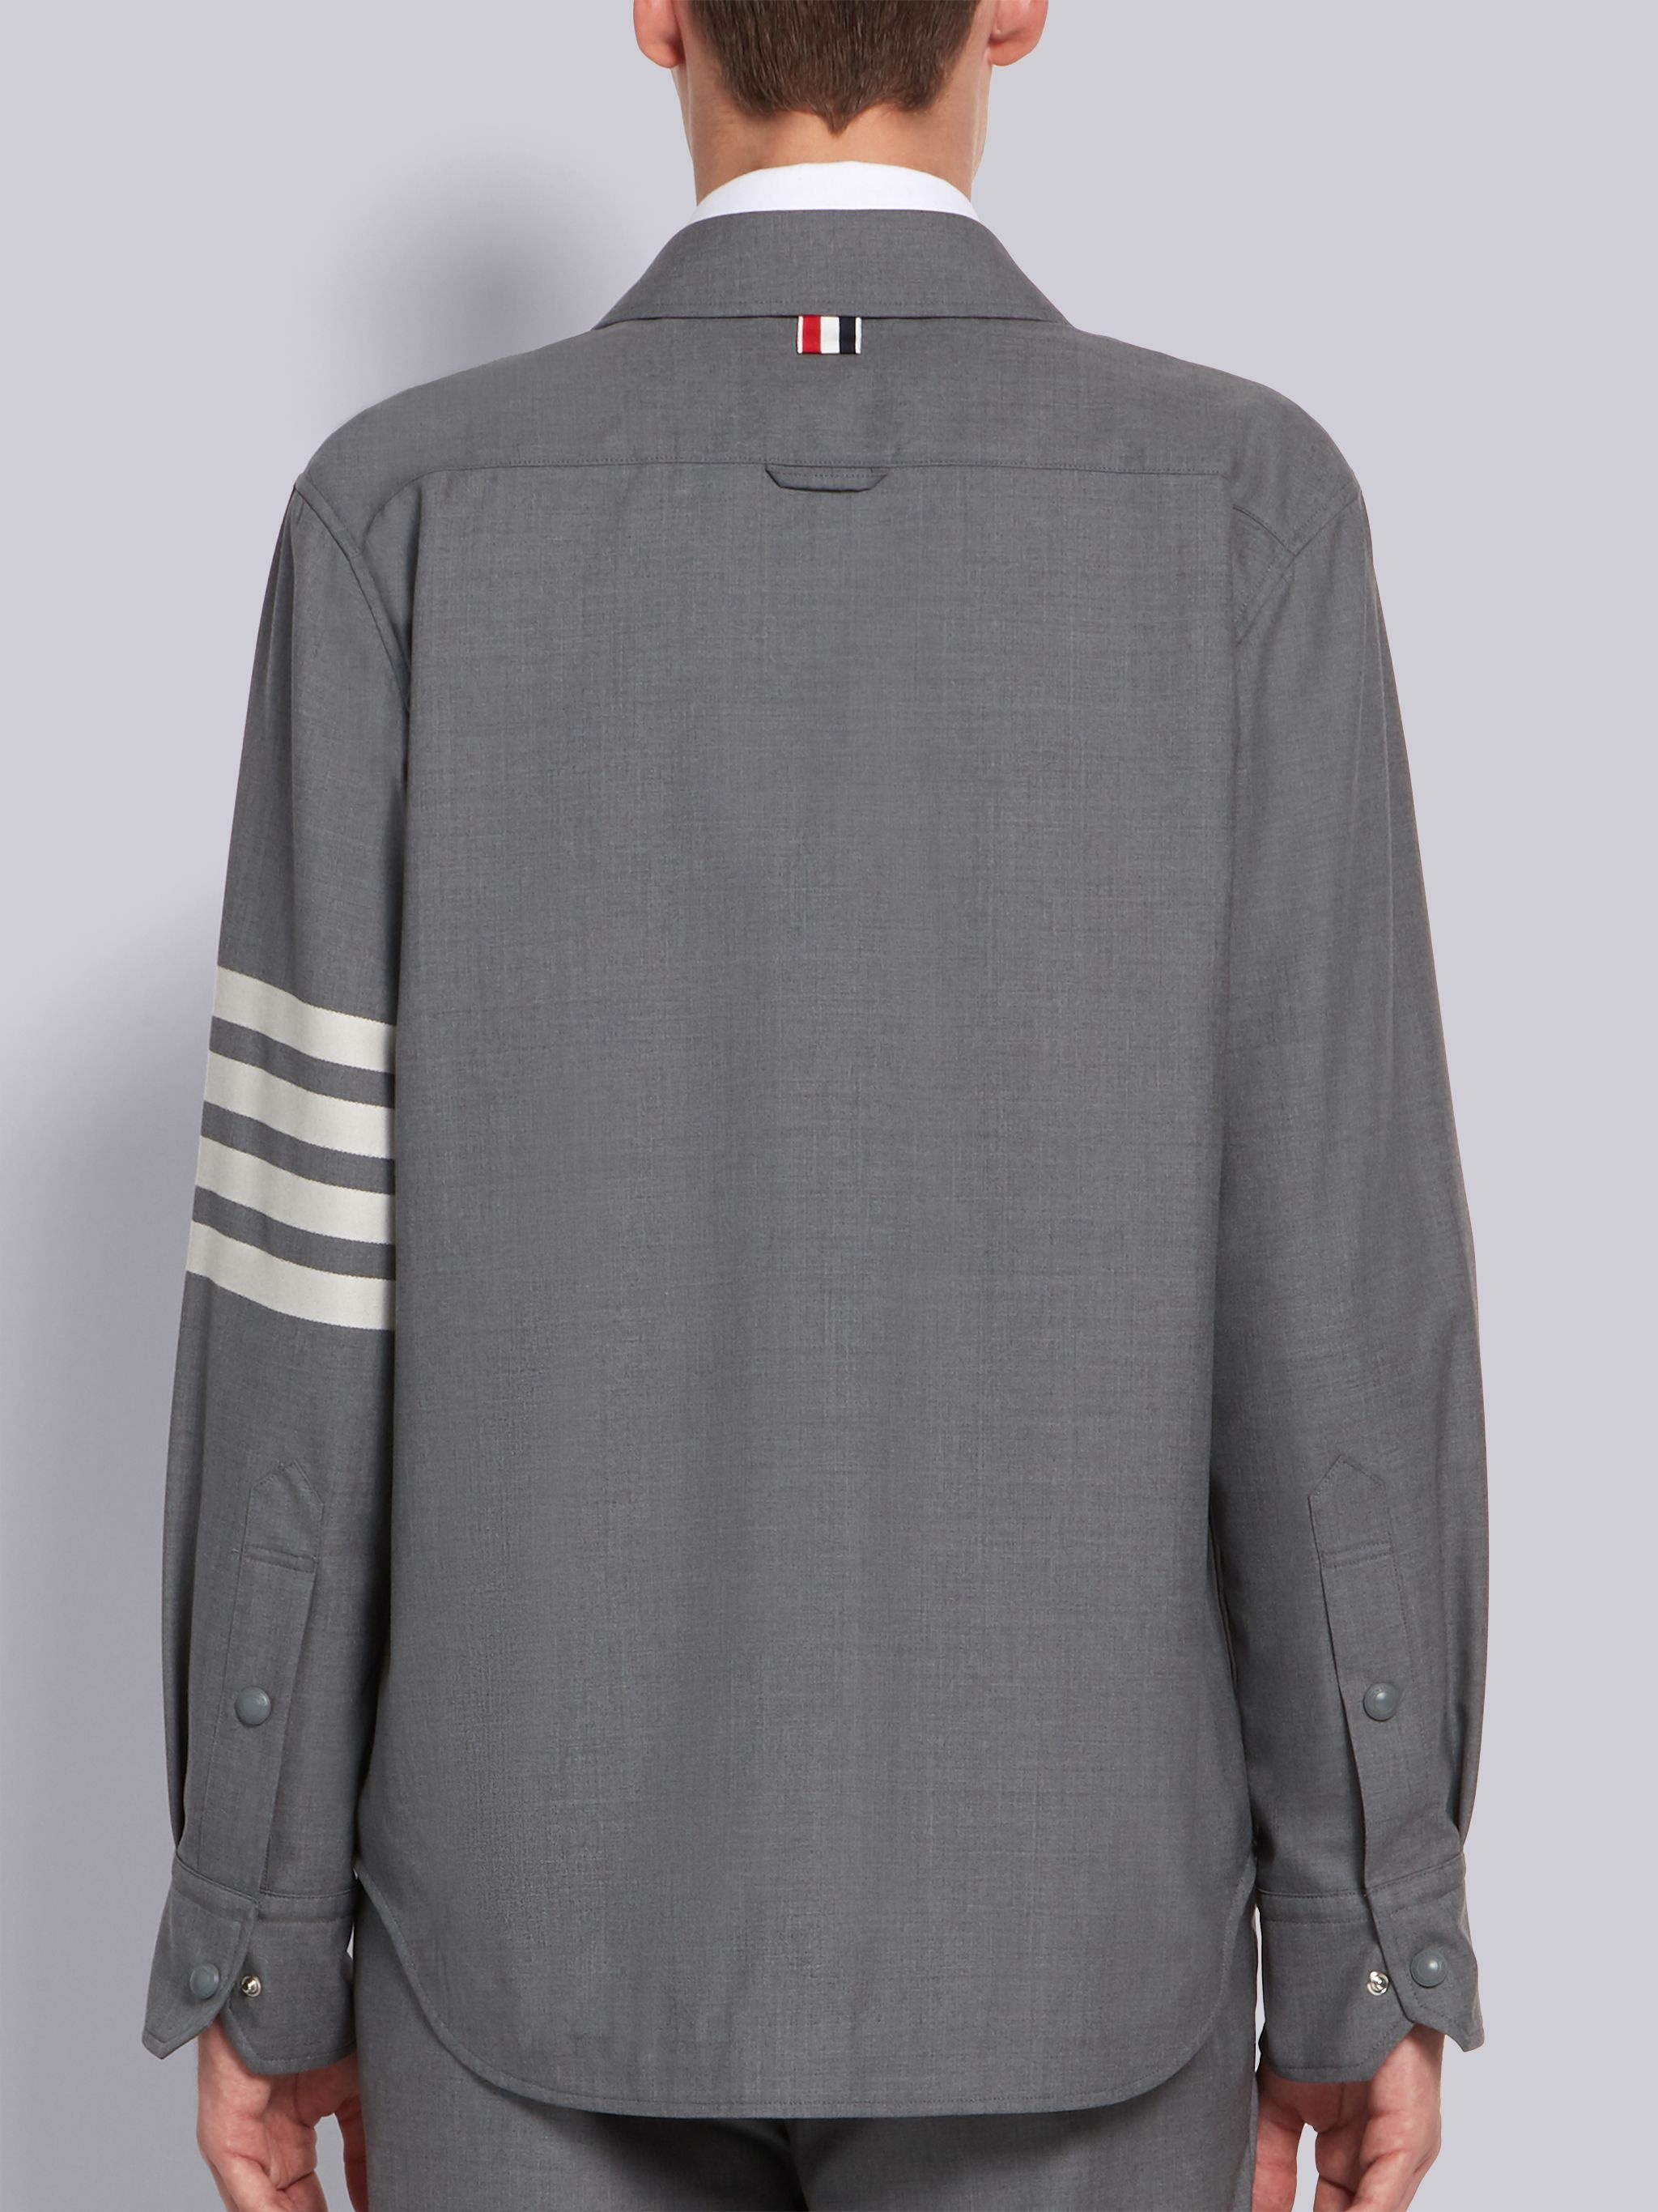 Medium Grey Wool Snap Front 4-Bar Shirt Jacket - 3